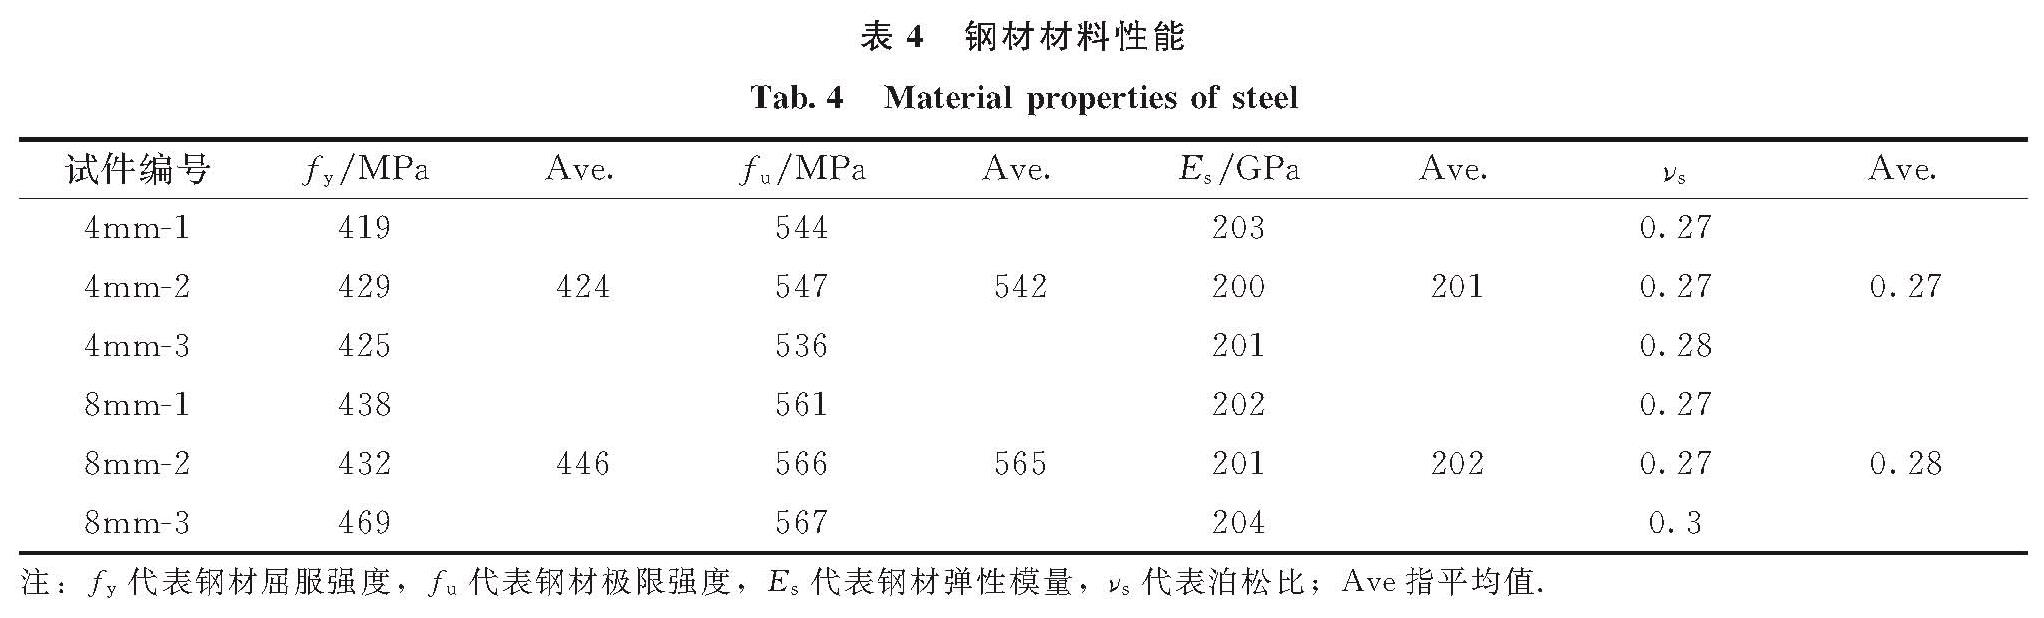 表4 钢材材料性能<br/>Tab.4 Material properties of steel